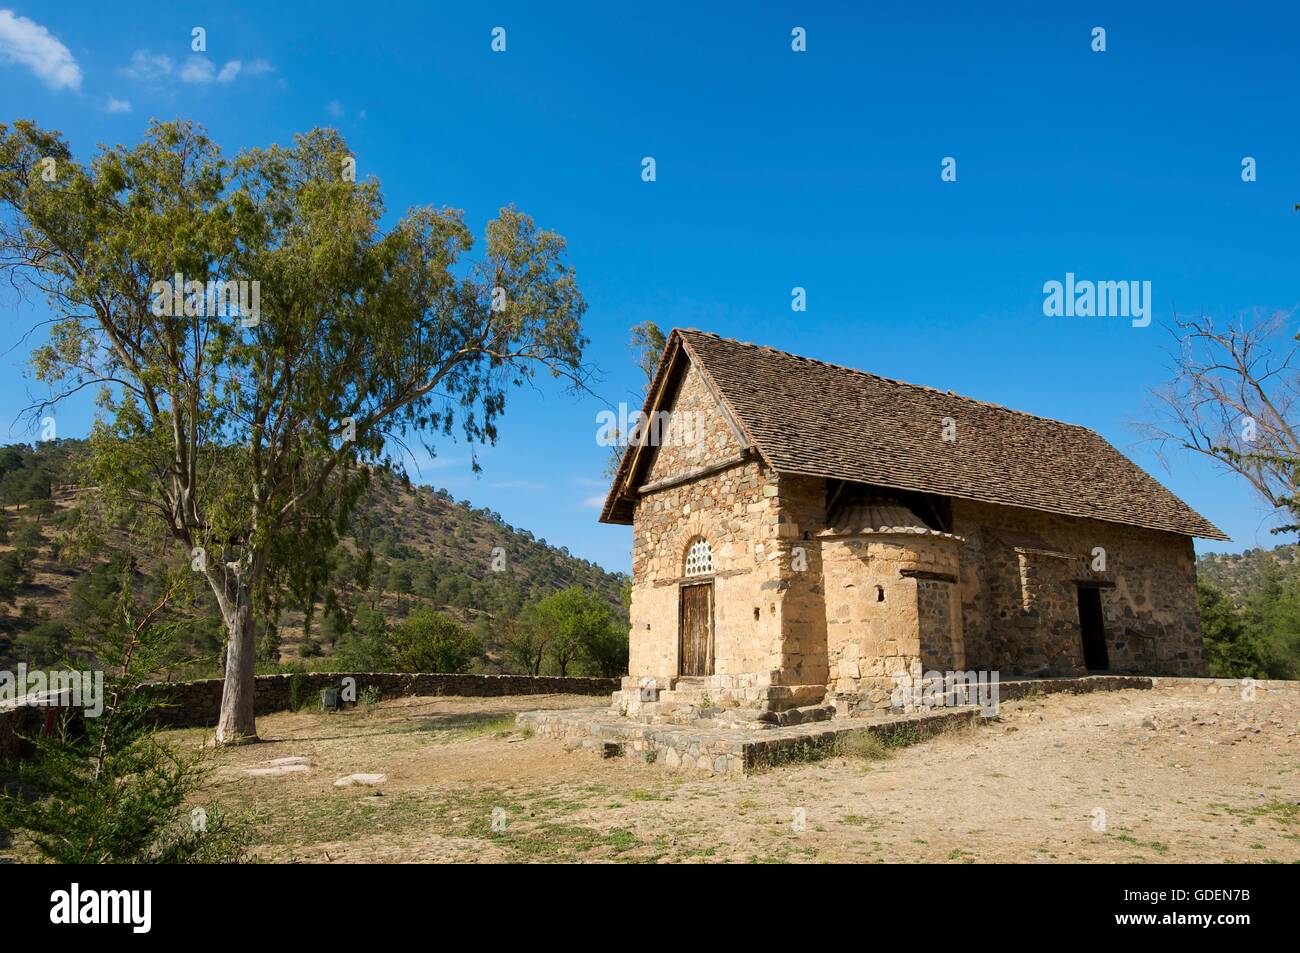 Panagia Forviotissa Church in Asinou, Troodos Mountains,Republic of Cyprus Stock Photo